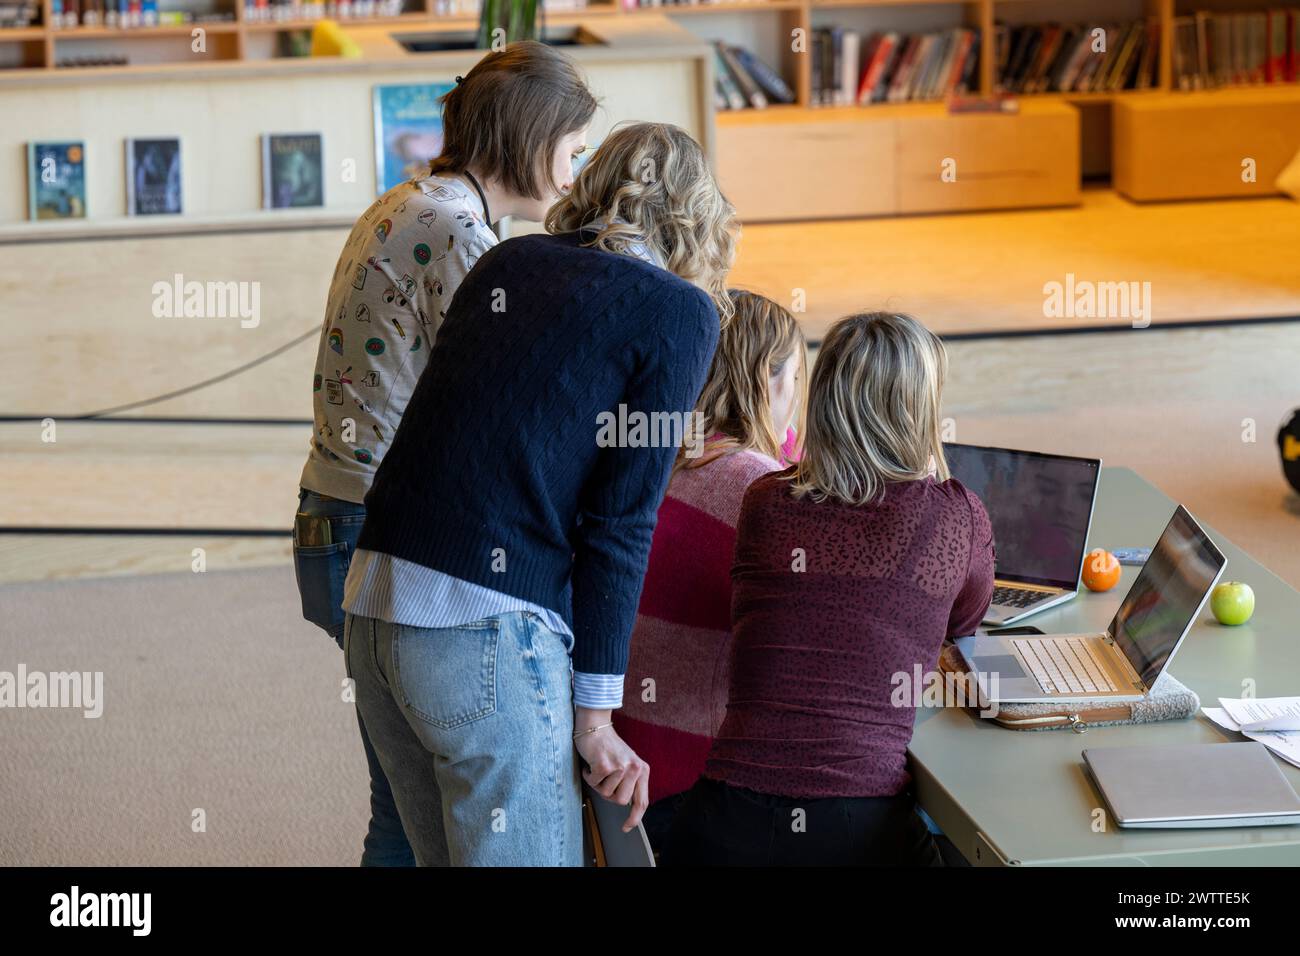 Un groupe de personnes engagées dans une discussion sur un ordinateur portable dans un cadre de bibliothèque. Banque D'Images